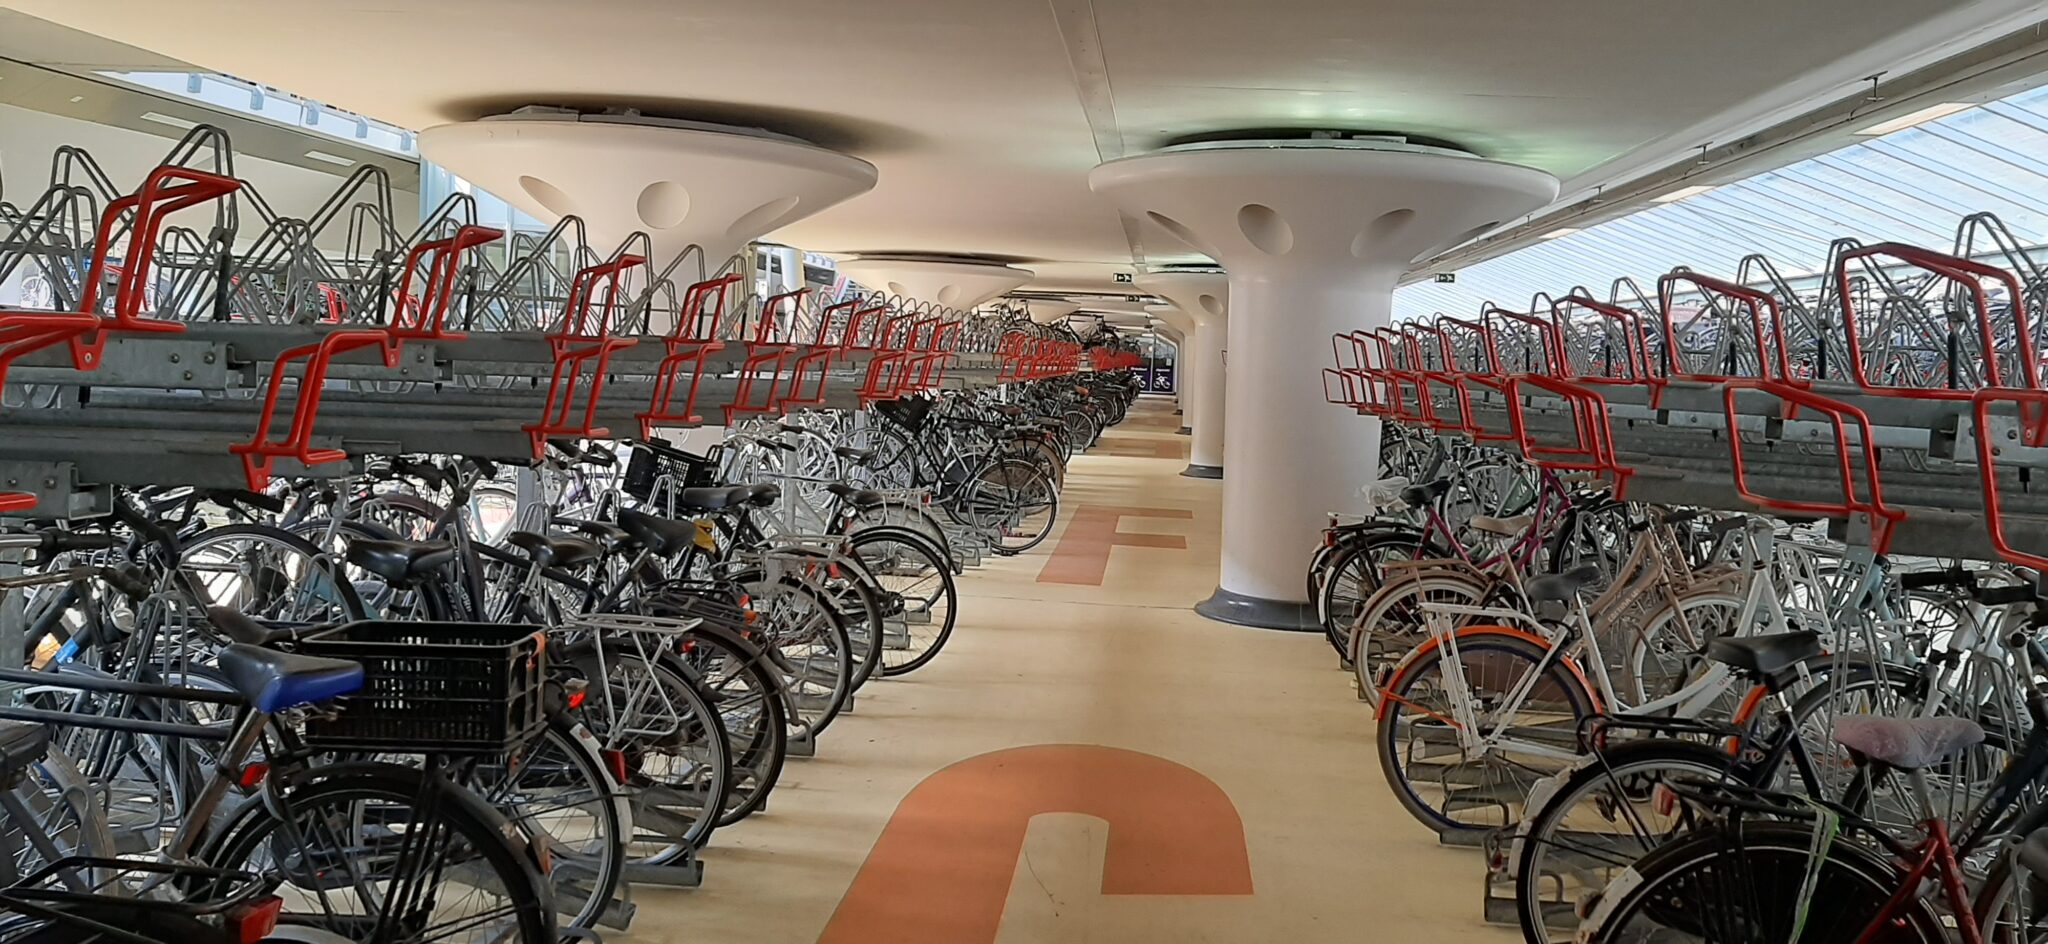 Vorbild Niederlande: Fahrradparkhaus am Bahnhof Houten